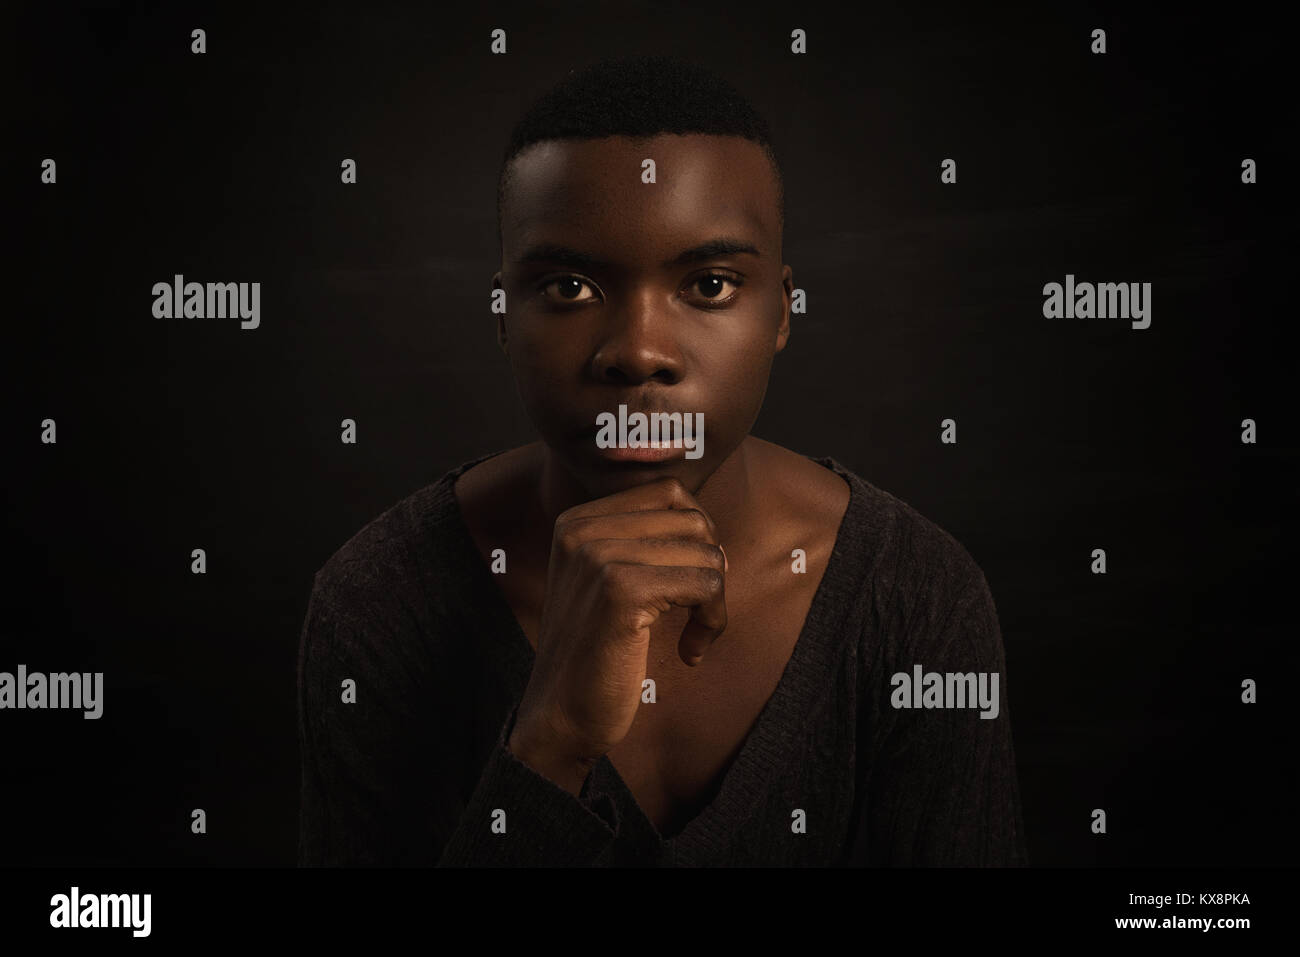 Ritratto di giovane africano, guardando la fotocamera con espressione seria Foto Stock